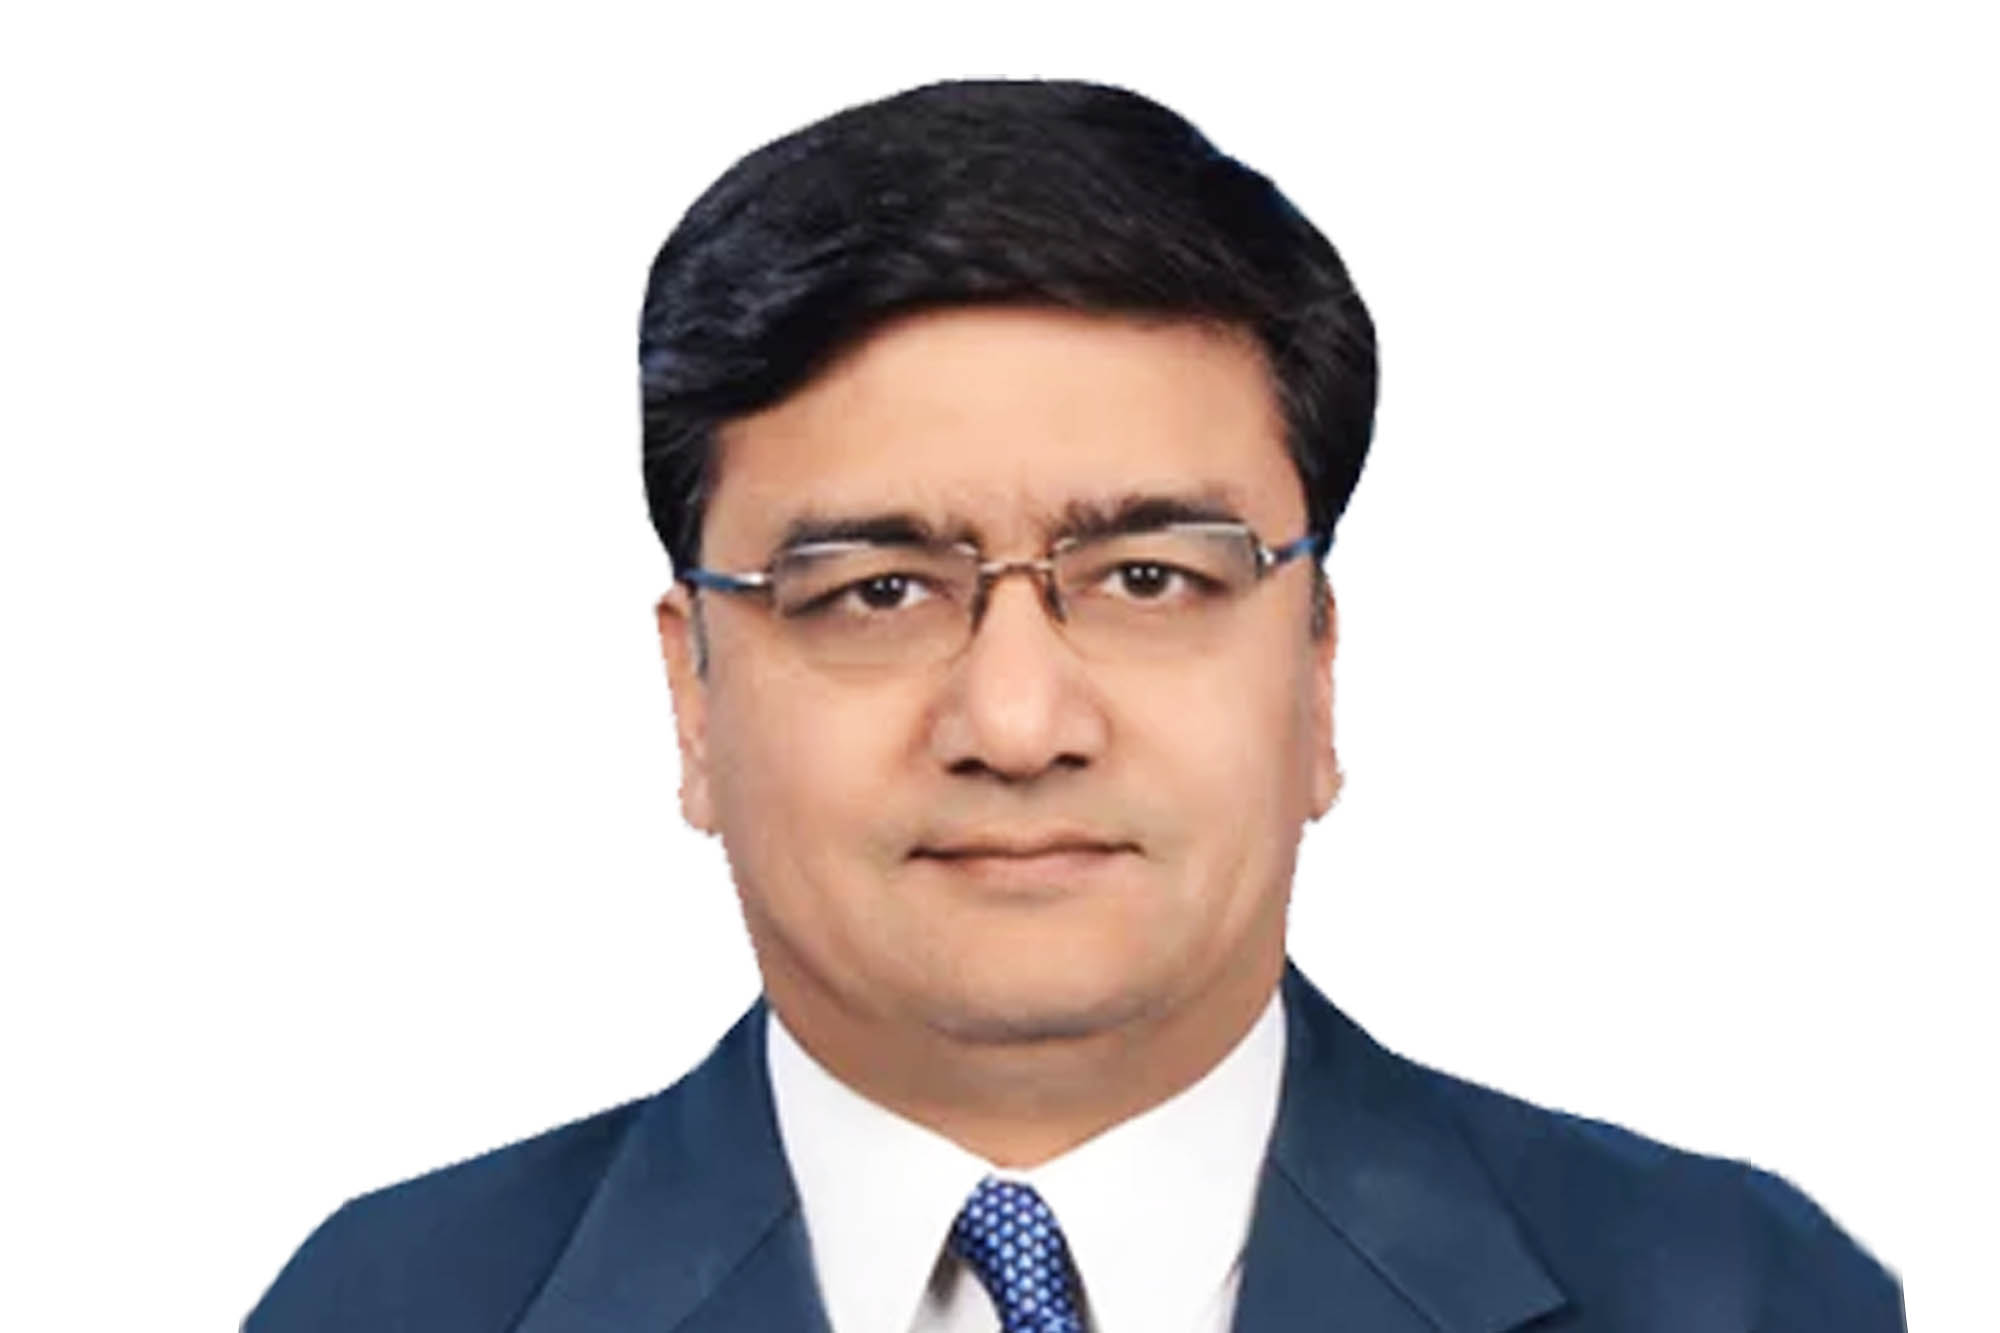 Sameer Jindal, Director, MG Motor India Pvt. Ltd.